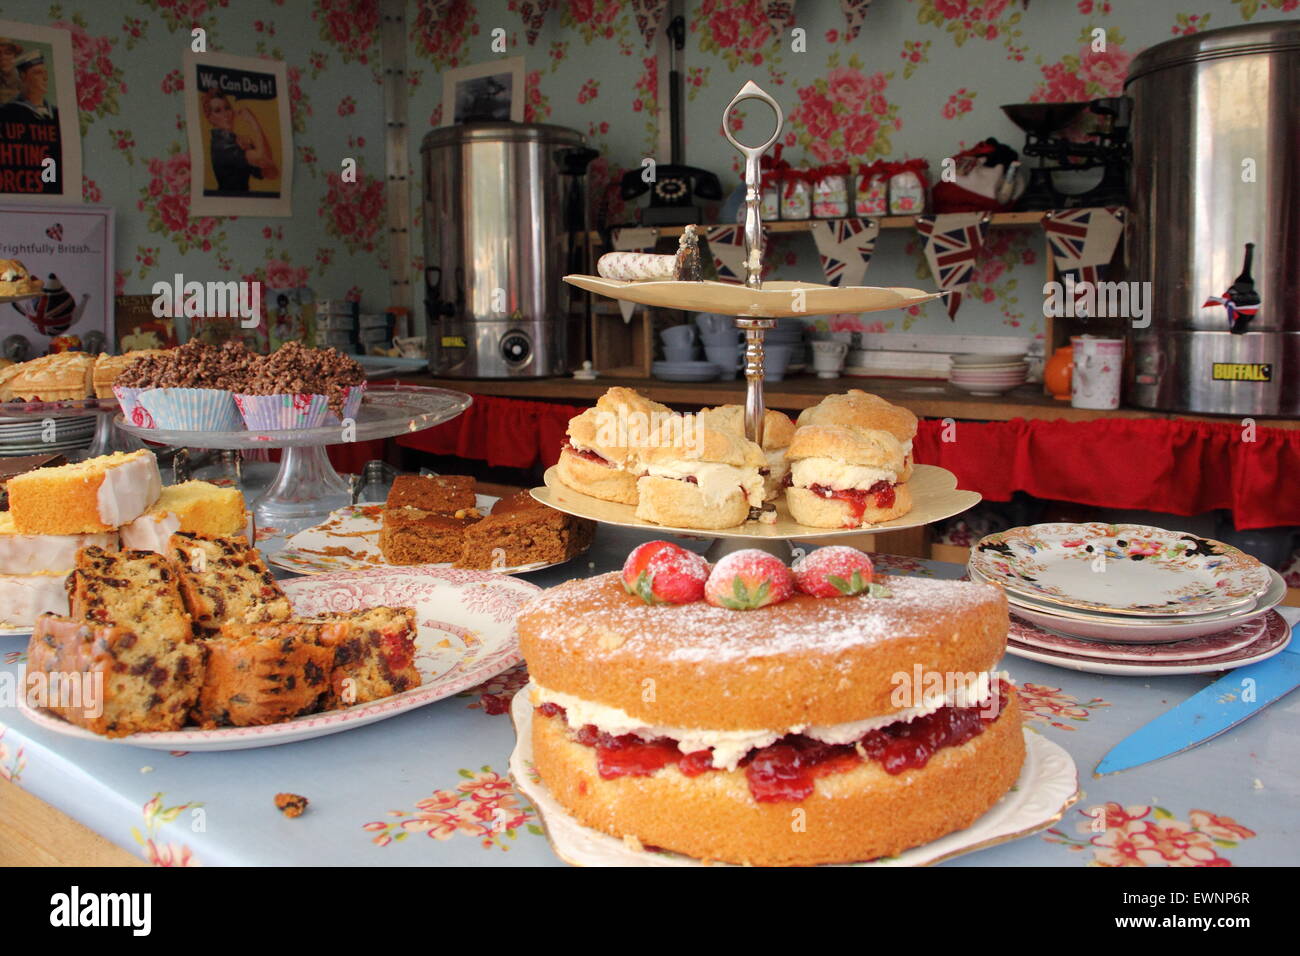 Du thé et des gâteaux dans un salon de thé à un festival d'été britannique traditionnel, Bakewell, Peak District, Derbyshire, Angleterre, Royaume-Uni Banque D'Images